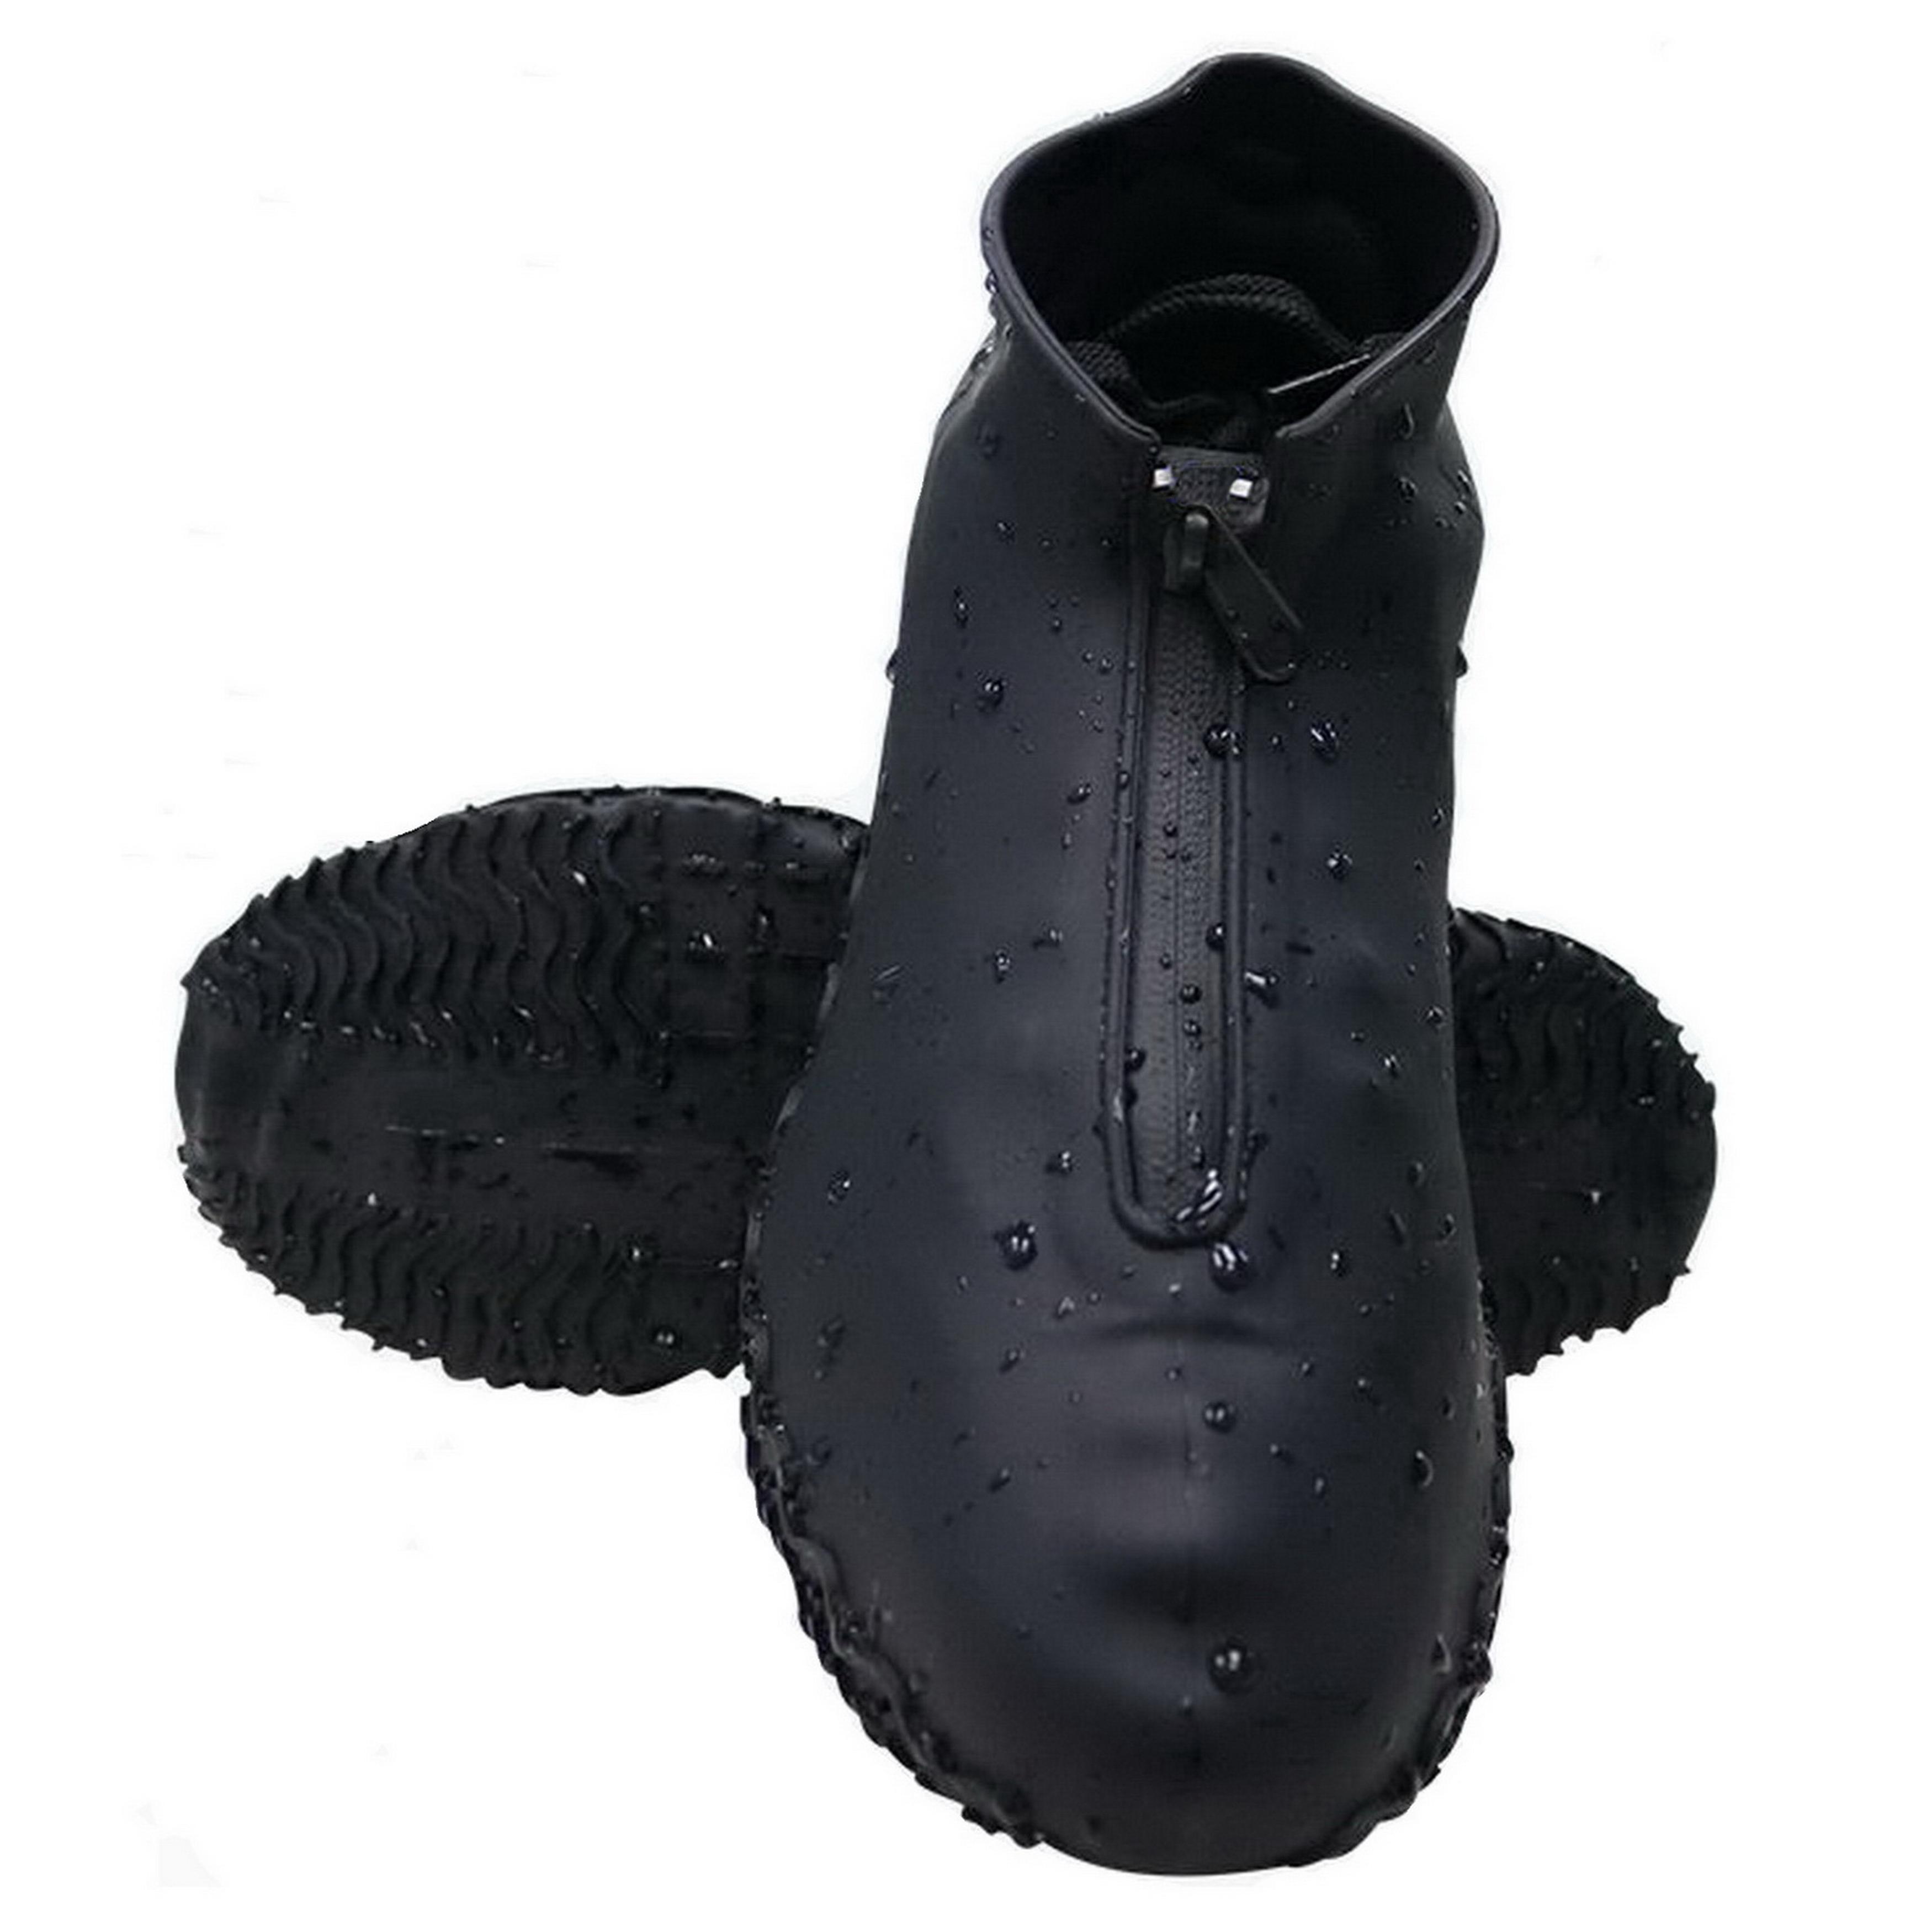 Фото 1 Cиликоновые чехлы-бахилы для обуви с молнией L 41-43 CG WSS2 Black